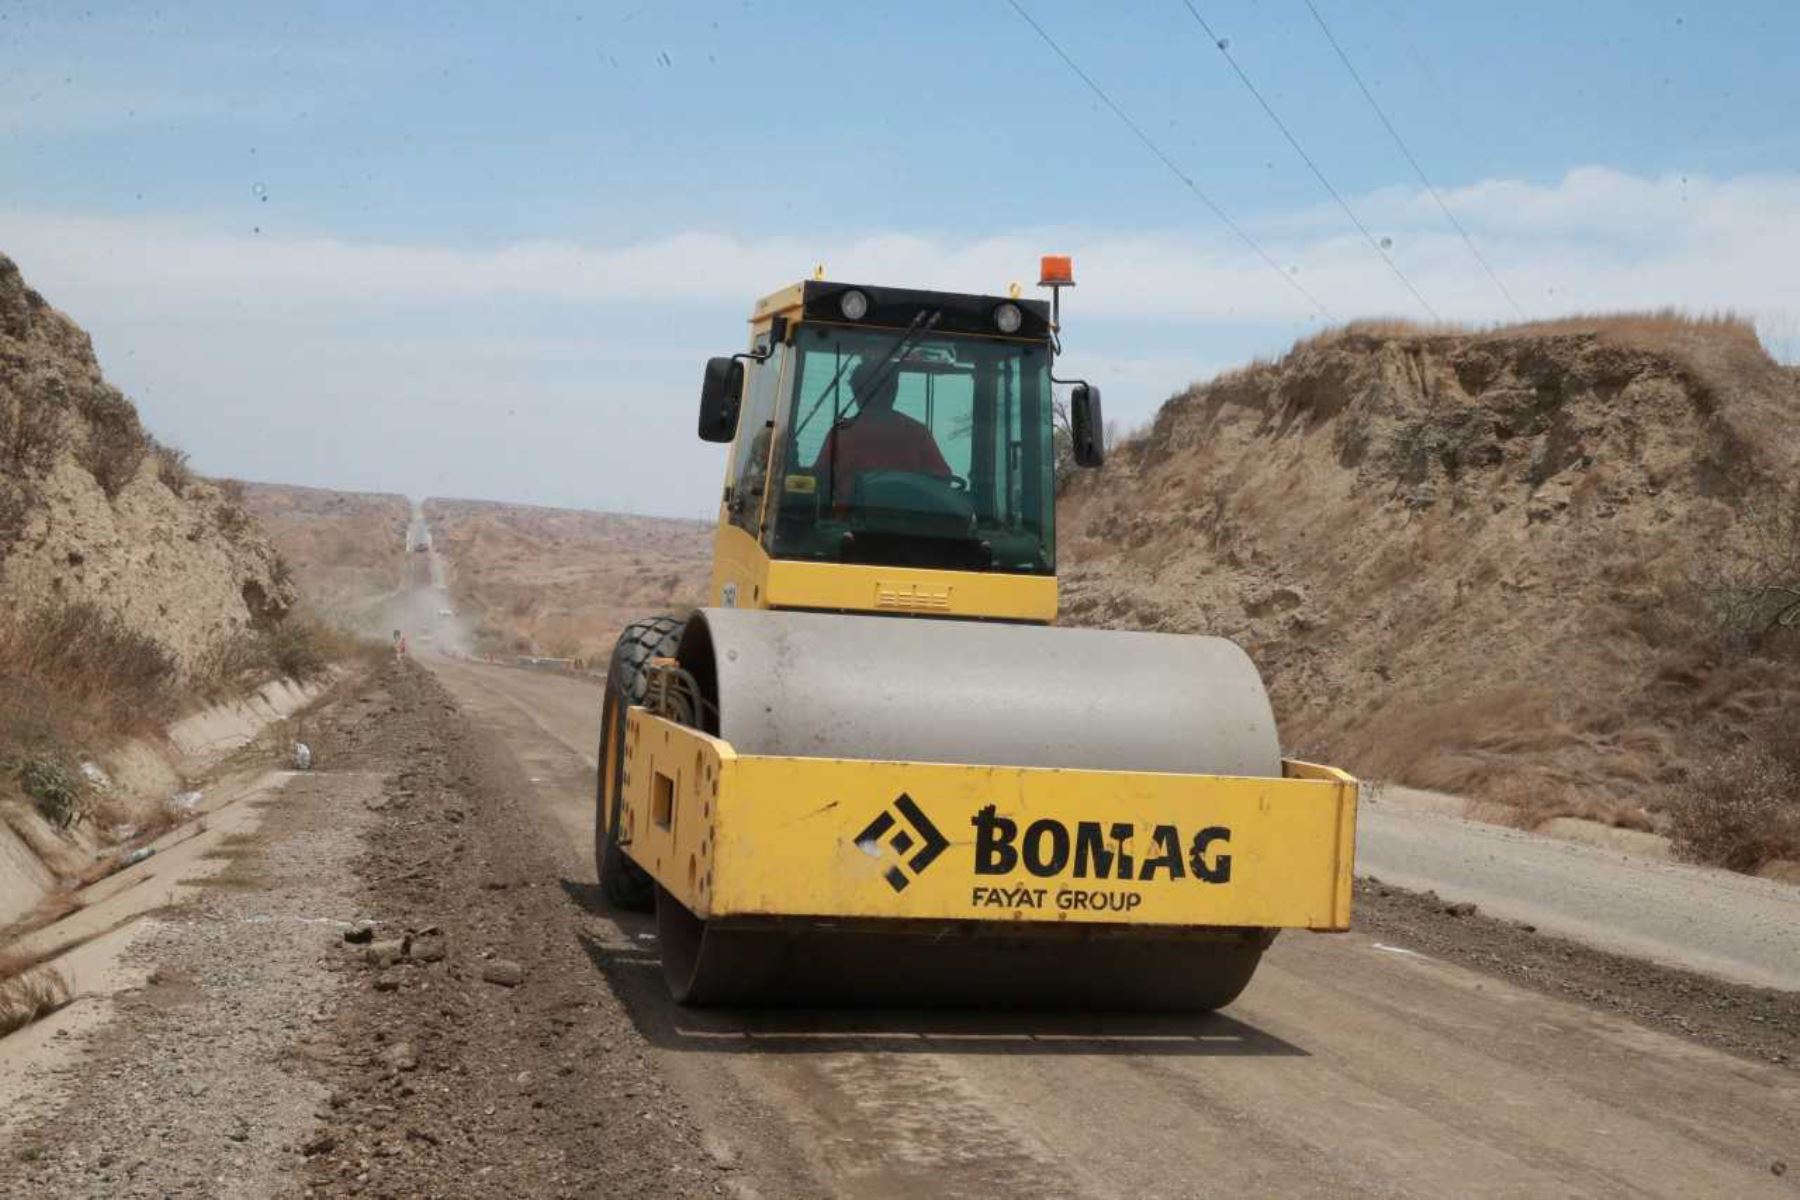 La Autoridad para la Reconstrucción con Cambios gestionó la transferencia de 2.1 millones de soles para que el Ministerio de Transportes y Comunicaciones inicie la reconstrucción de cuatro tramos de carretera en las provincias de Ocros y Huarmey, en la región Áncash, afectada por intensas lluvias provocadas por El Niño Costero en 2017.